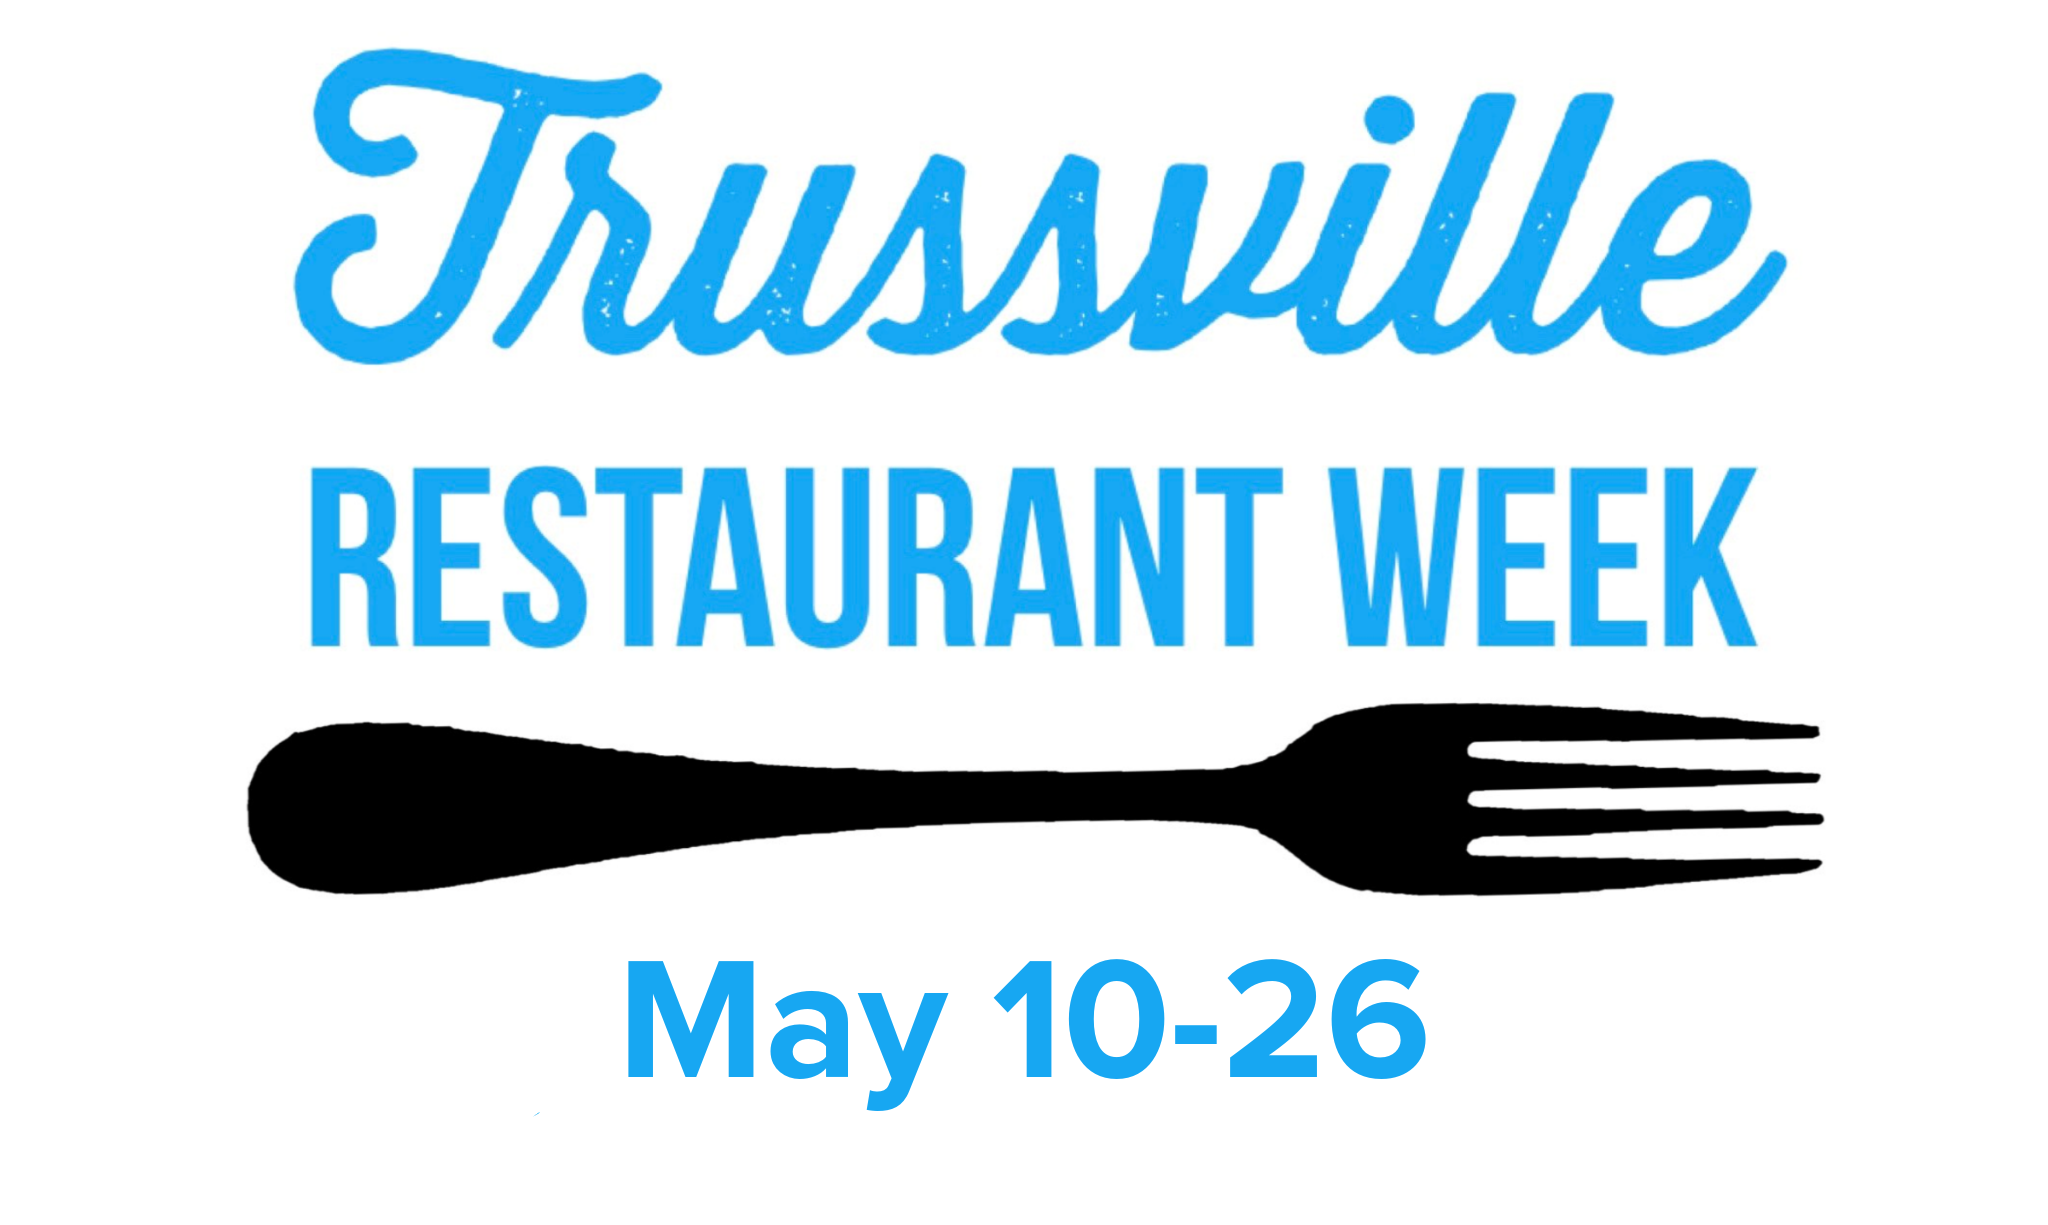 Chamber announces plans for Taste of Trussville, Restaurant Week